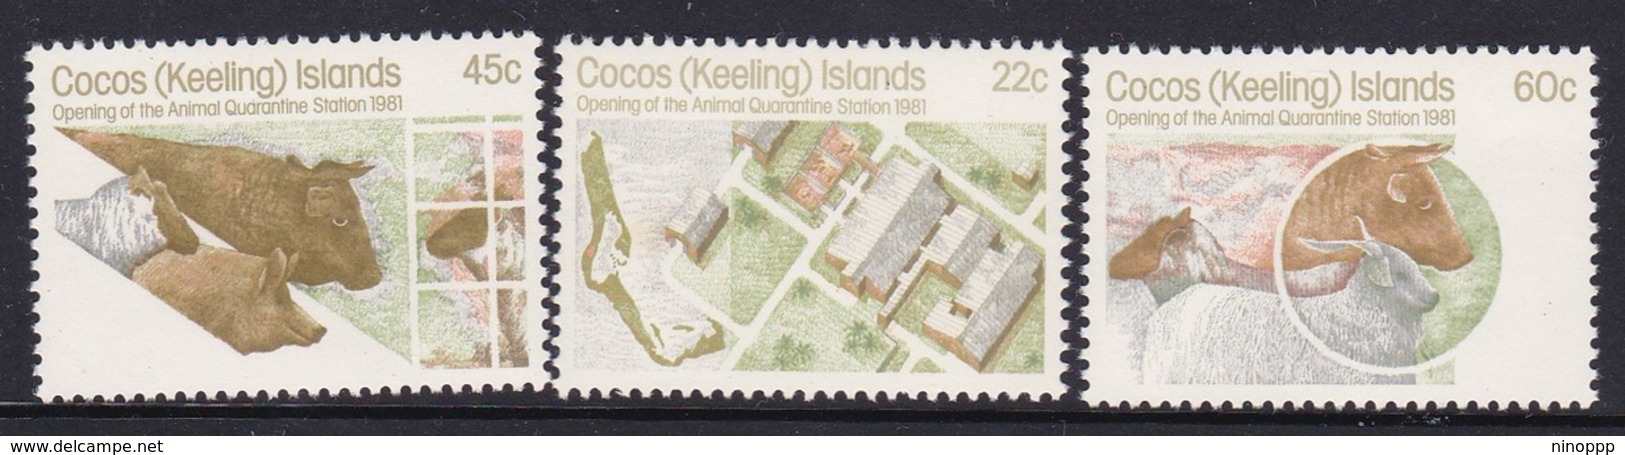 Cocos (Keeling) Islands SG 62-64 1981 Quarantine Station MNH Set - Cocos (Keeling) Islands